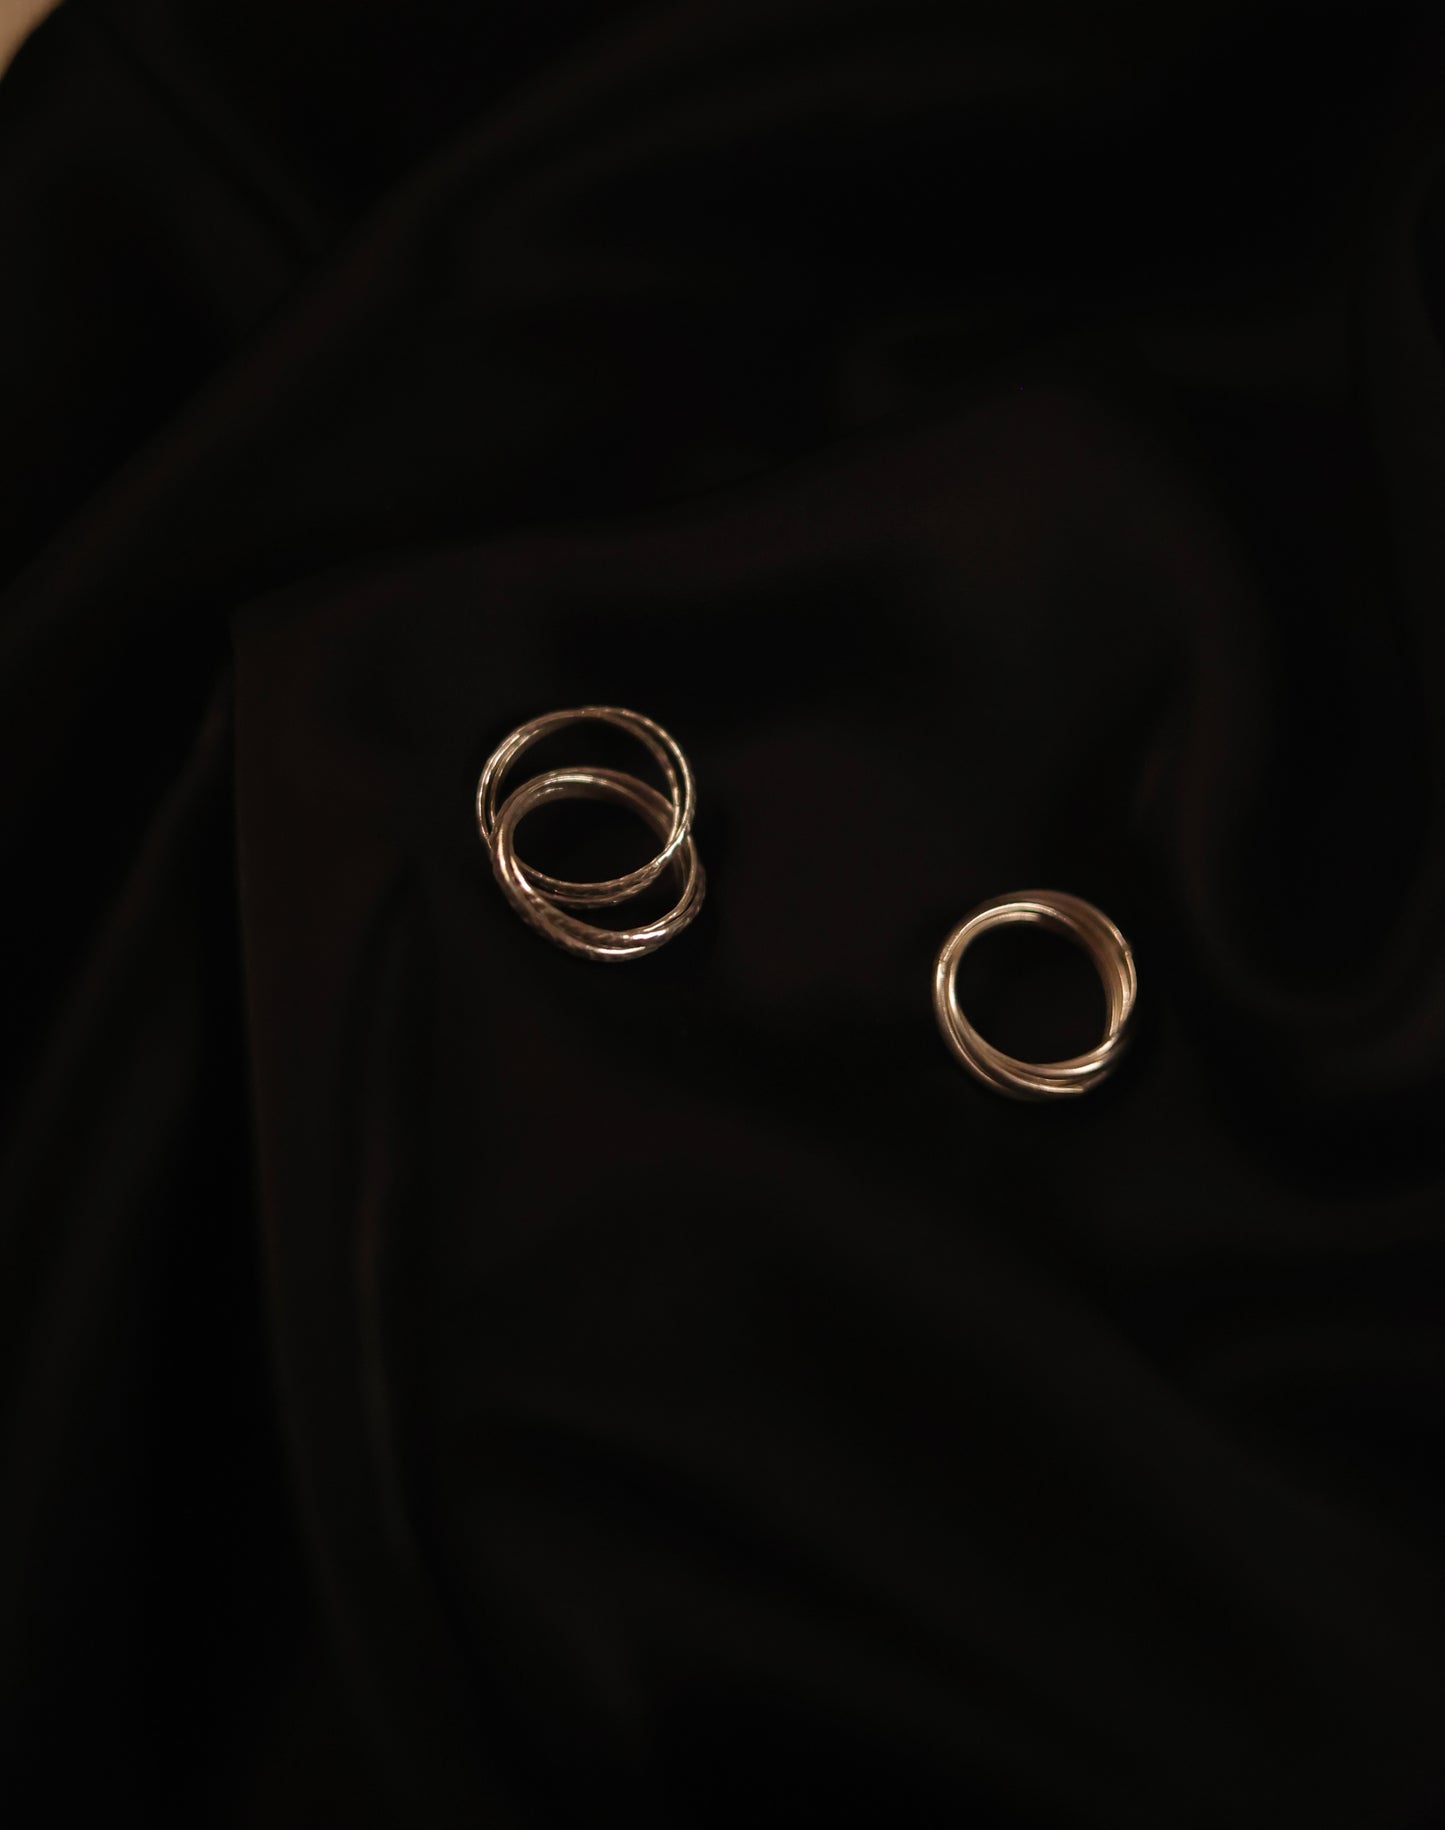 Interlocked Round Silver Minimalist Ring